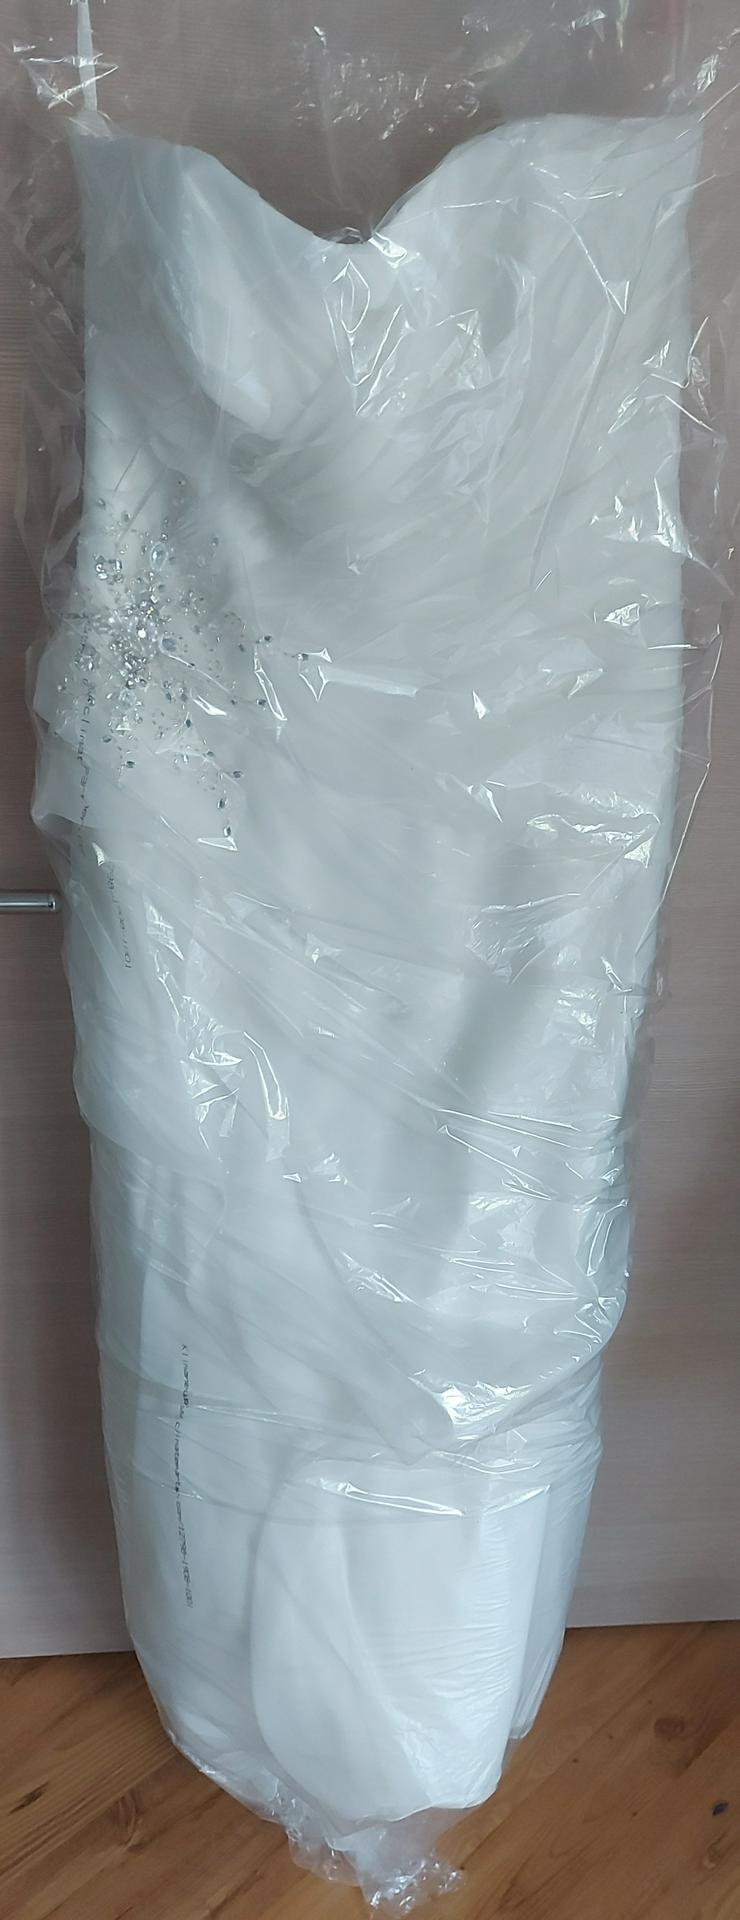 Bild 6: Brautkleid Creme weiß Gr. 44 46 inkl. Reifrock frisch gereinigt